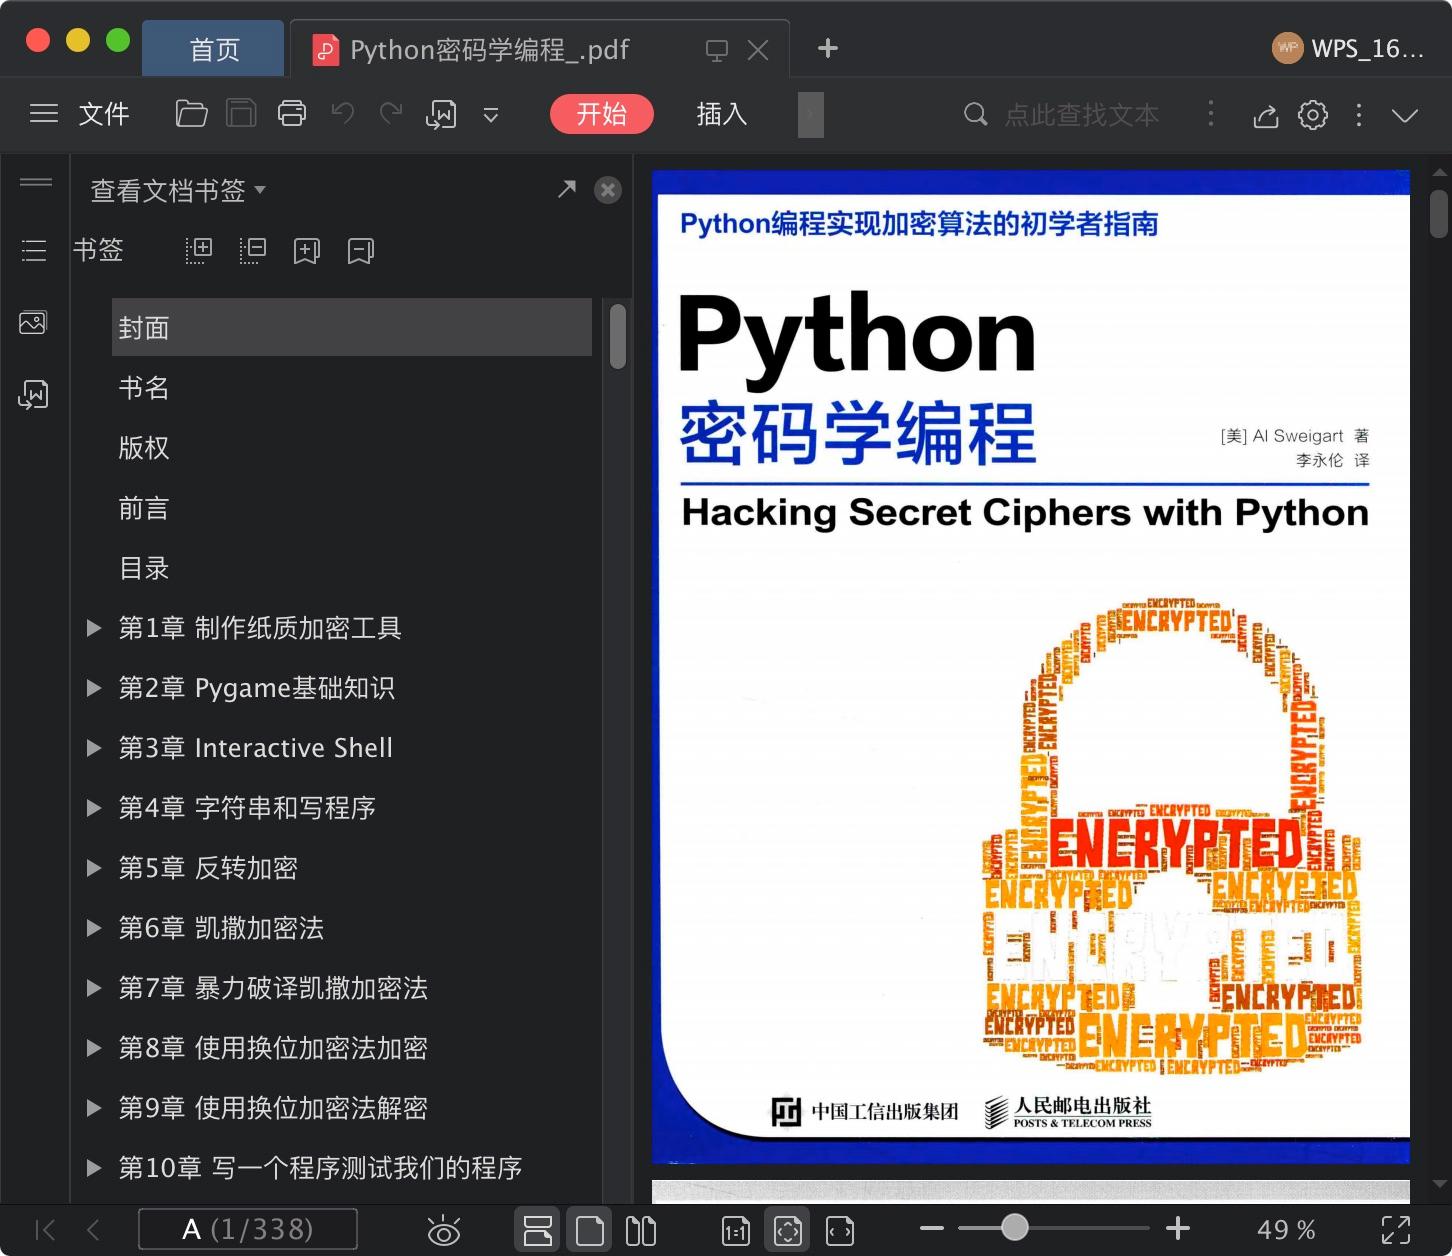 Python教程密码学编程pdf电子书籍下载百度云